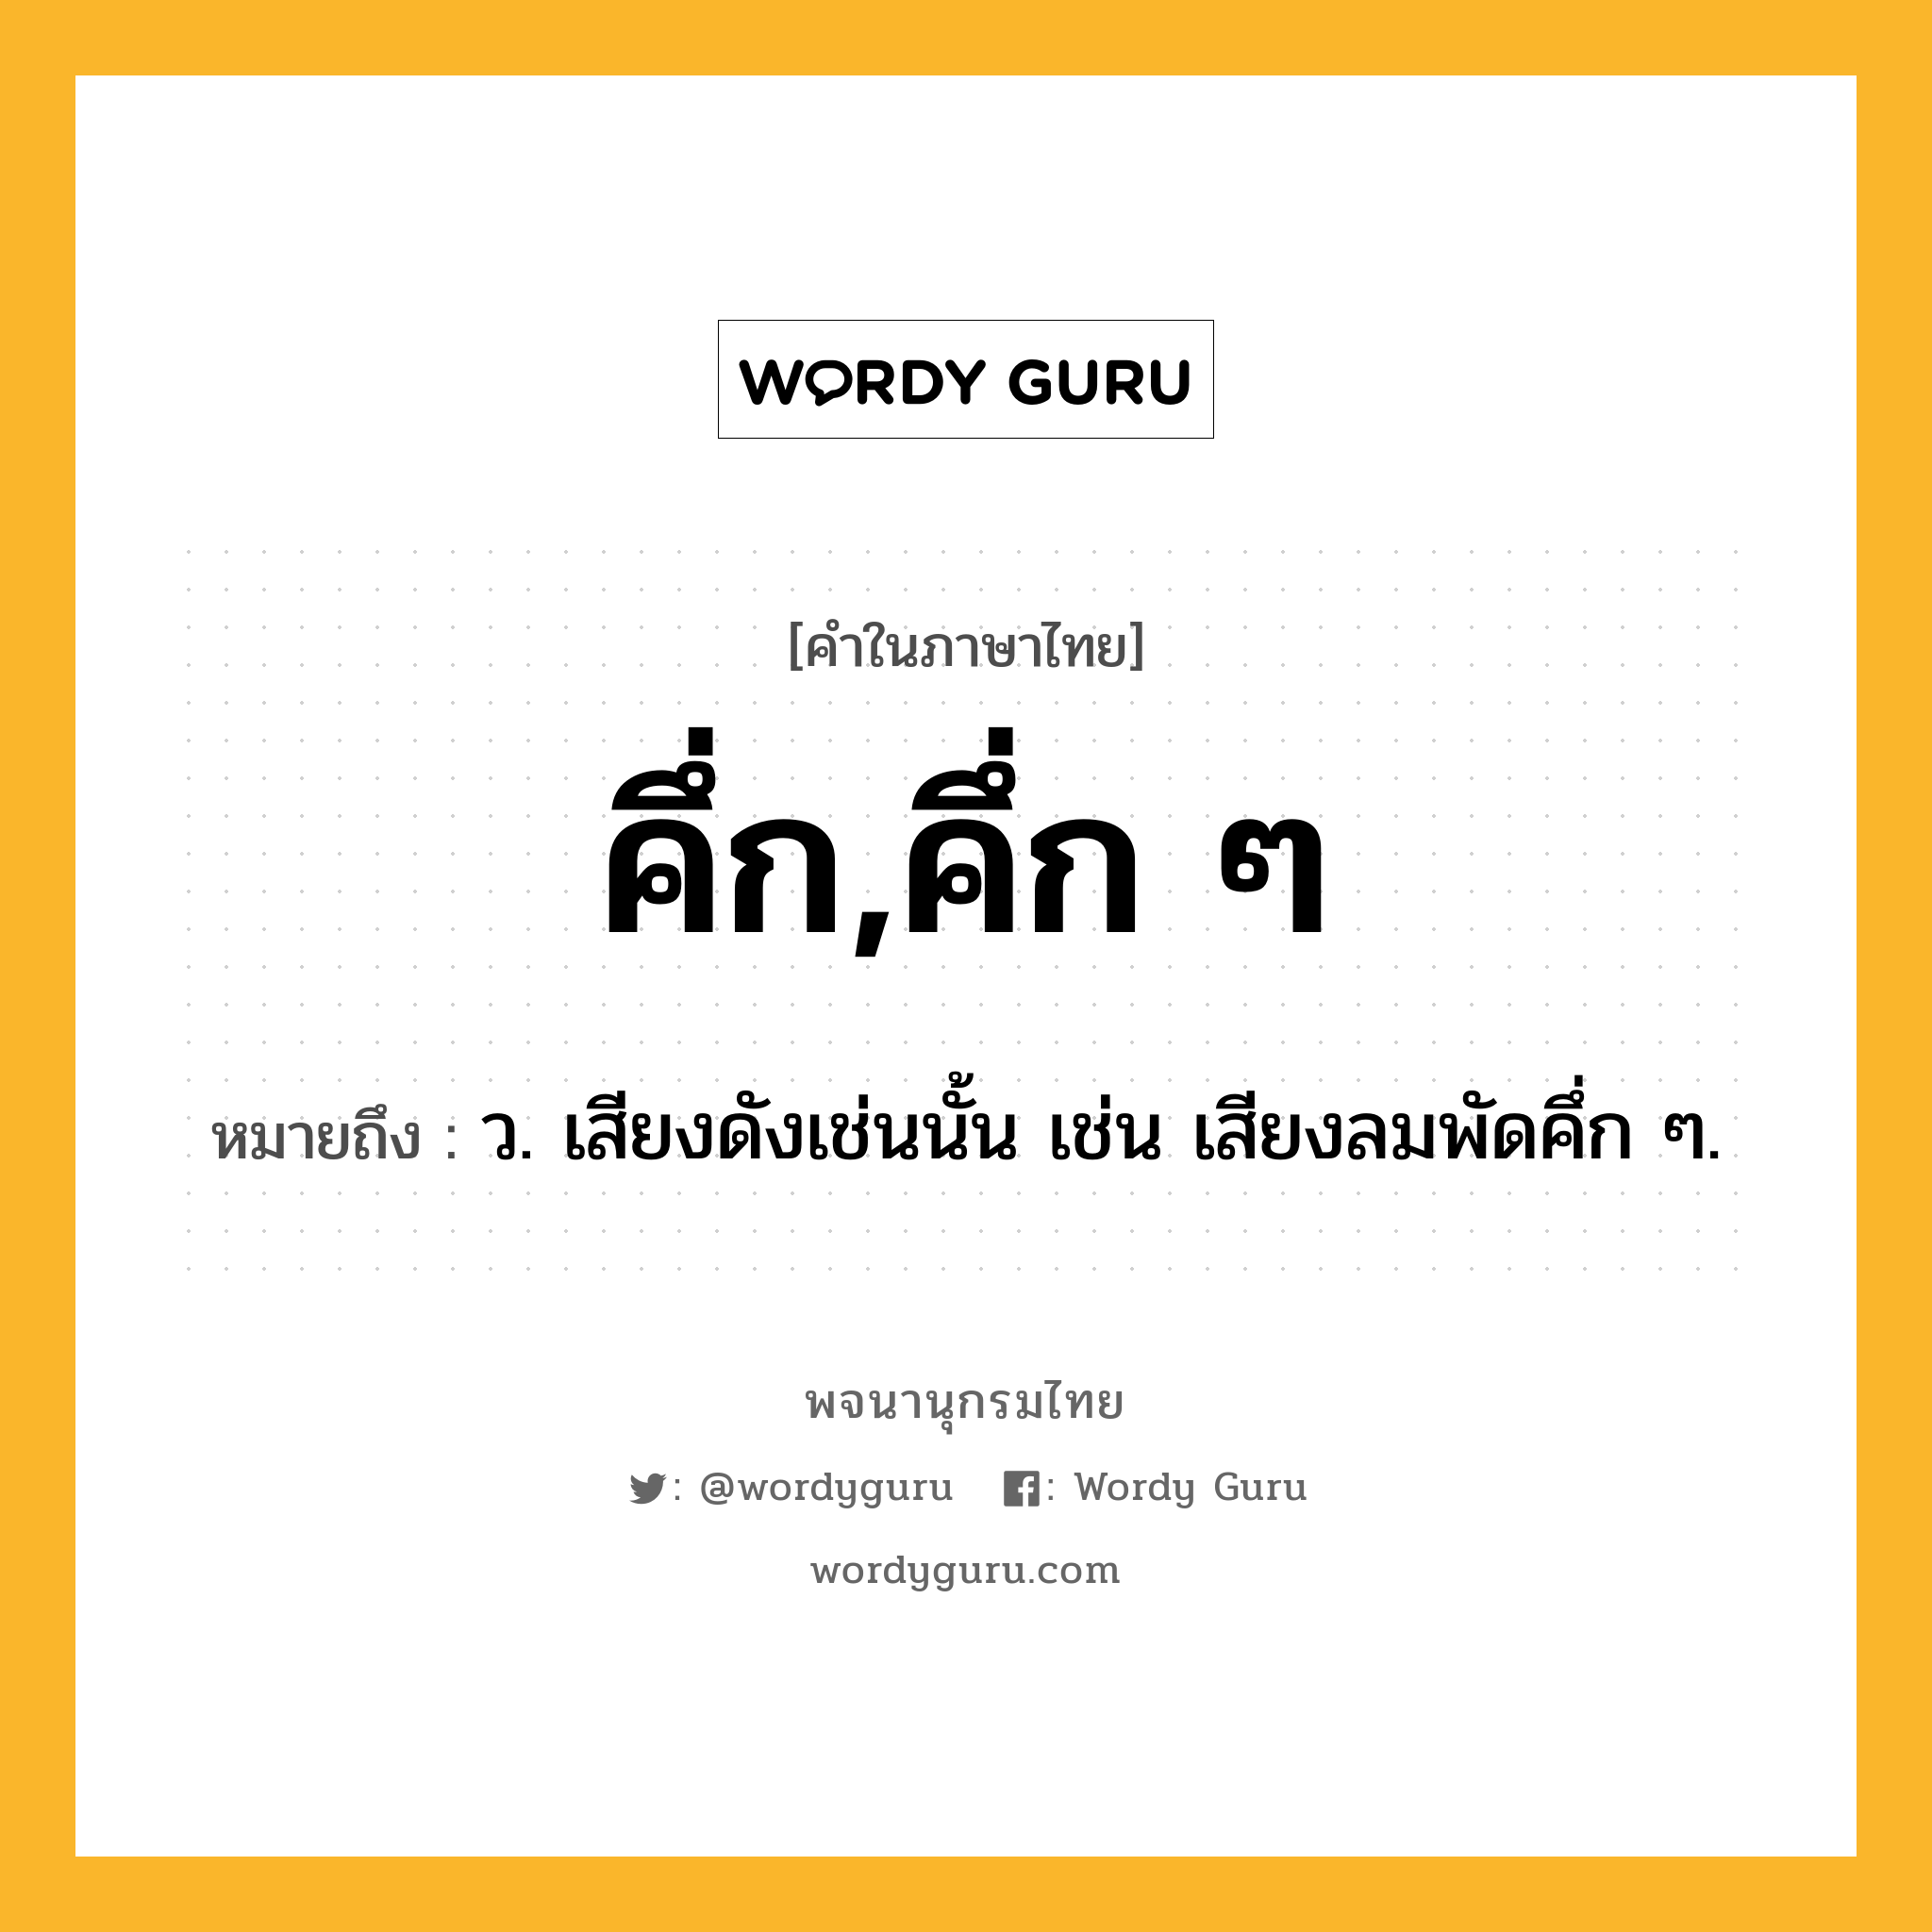 คึ่ก,คึ่ก ๆ ความหมาย หมายถึงอะไร?, คำในภาษาไทย คึ่ก,คึ่ก ๆ หมายถึง ว. เสียงดังเช่นนั้น เช่น เสียงลมพัดคึ่ก ๆ.